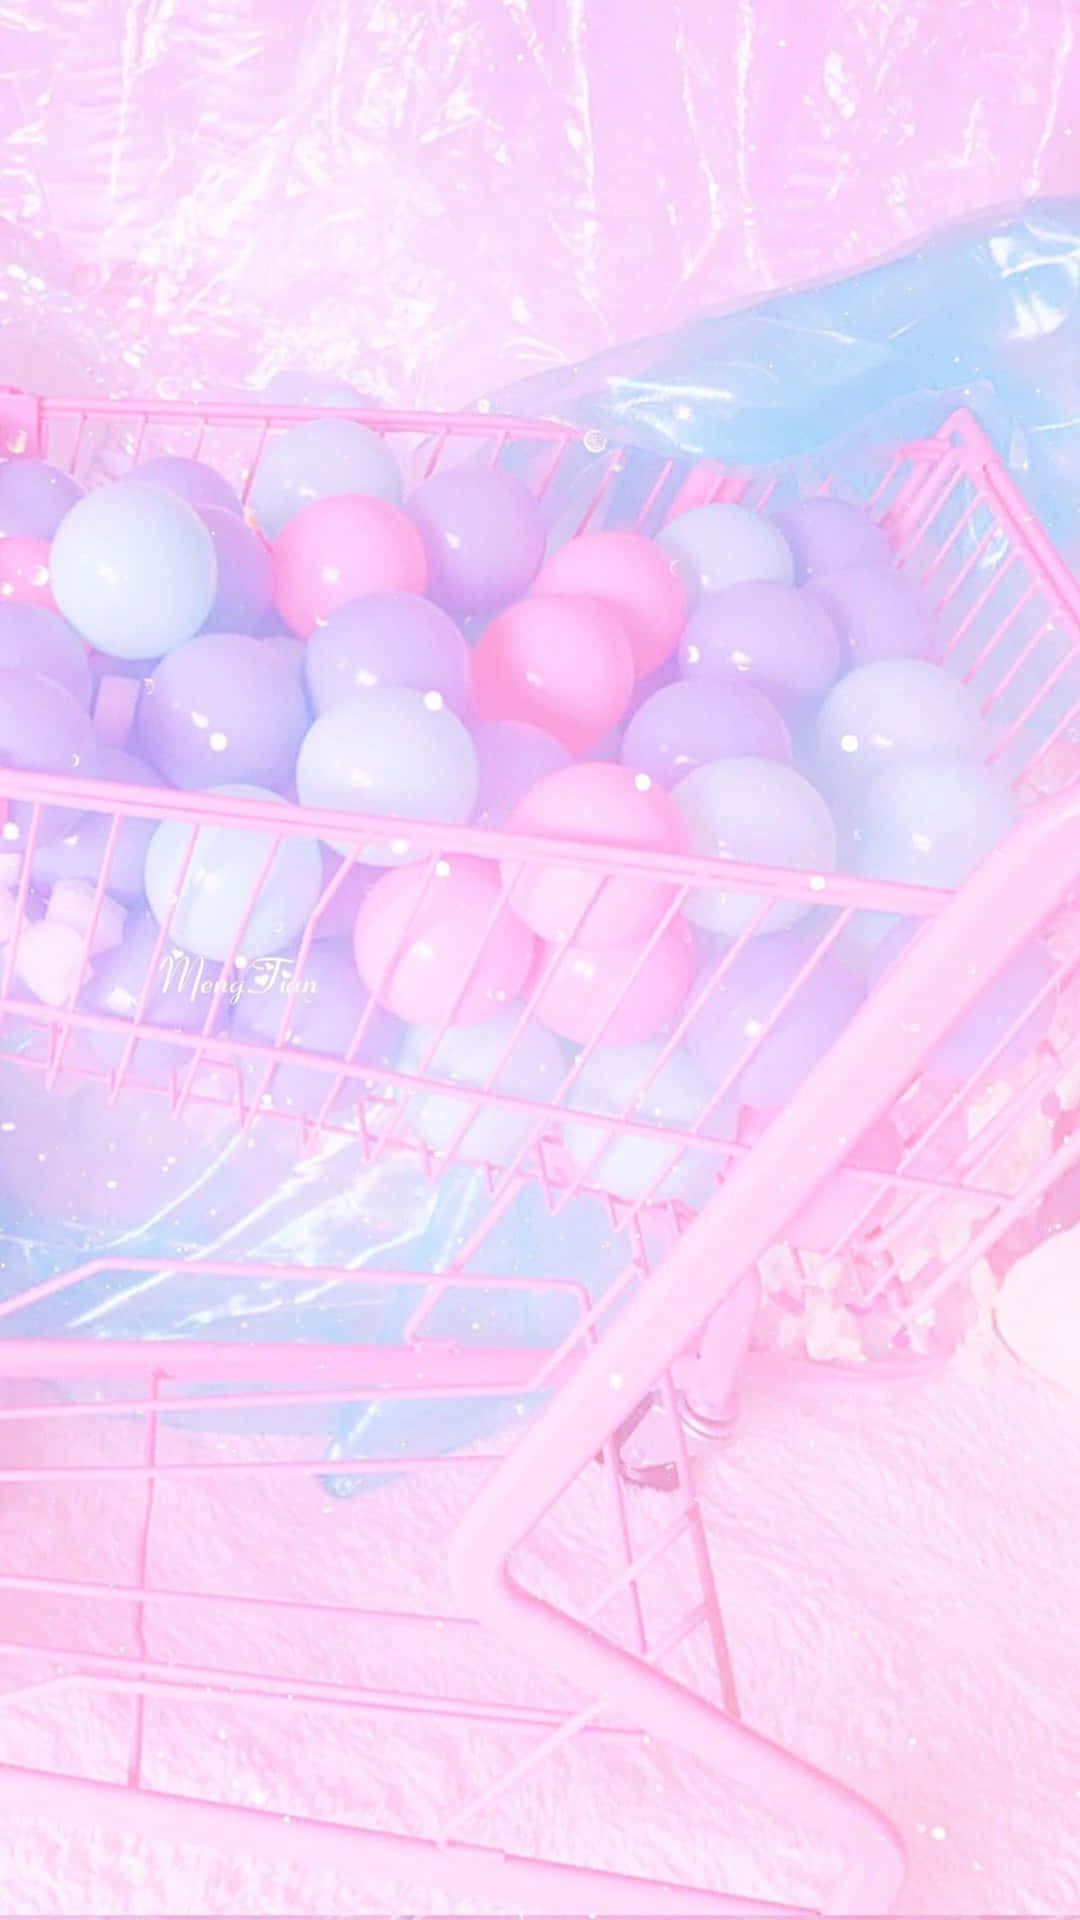 Umcarrinho De Compras Cor-de-rosa Com Balões Cor-de-rosa E Azuis Na Tela Do Computador Ou Celular. Papel de Parede